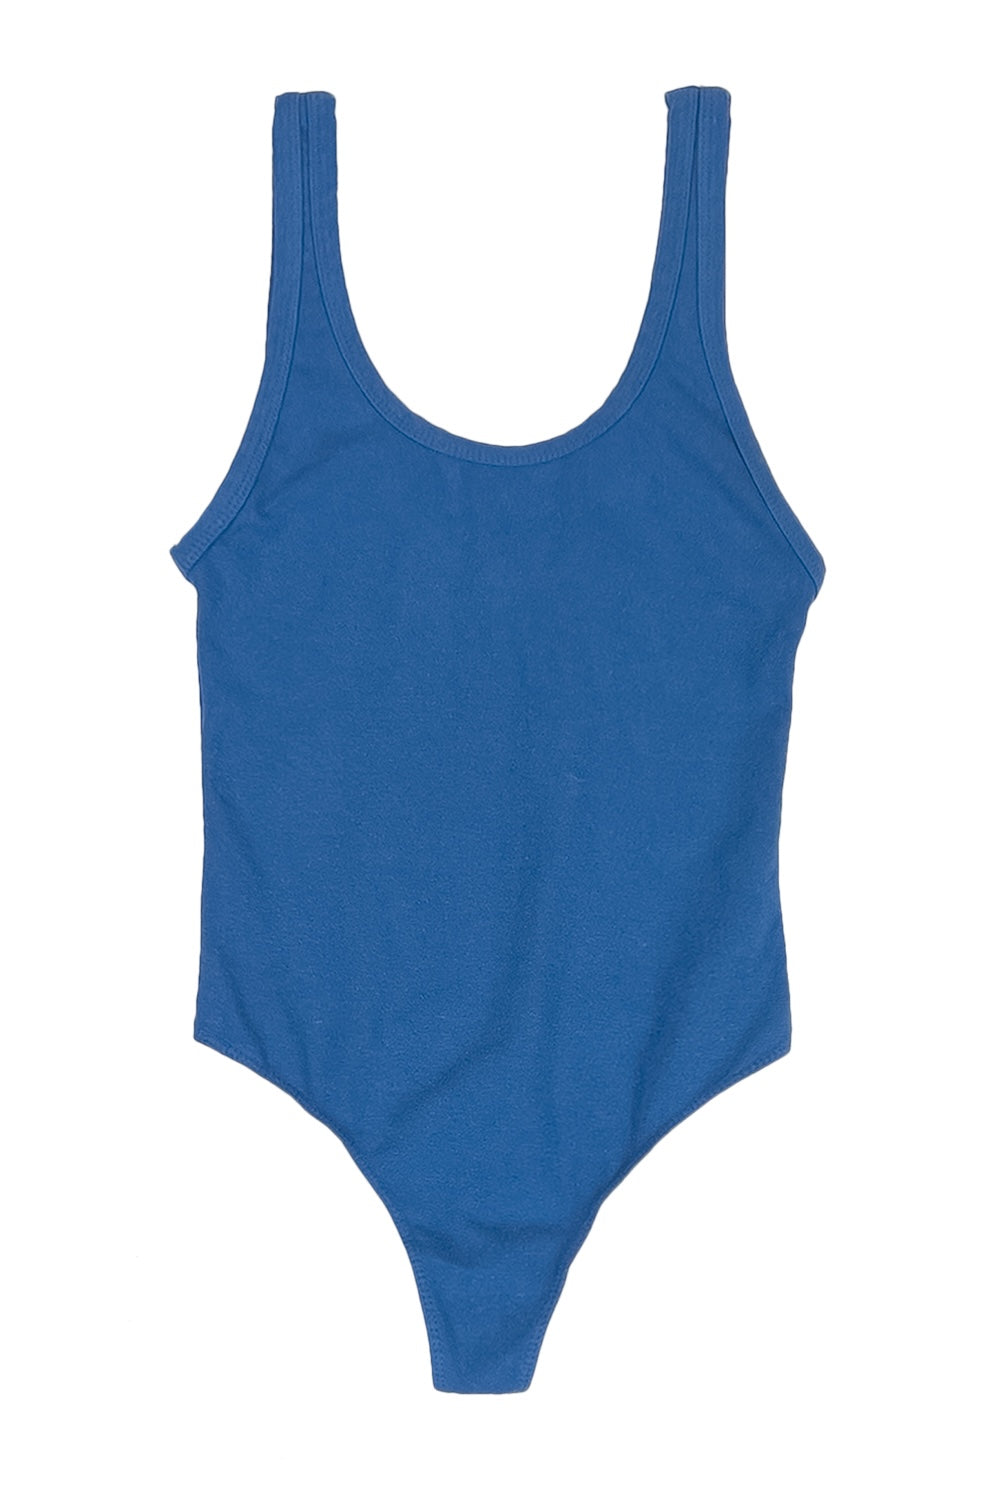 Bodysuit | Jungmaven Hemp Clothing & Accessories / Color: Galaxy Blue